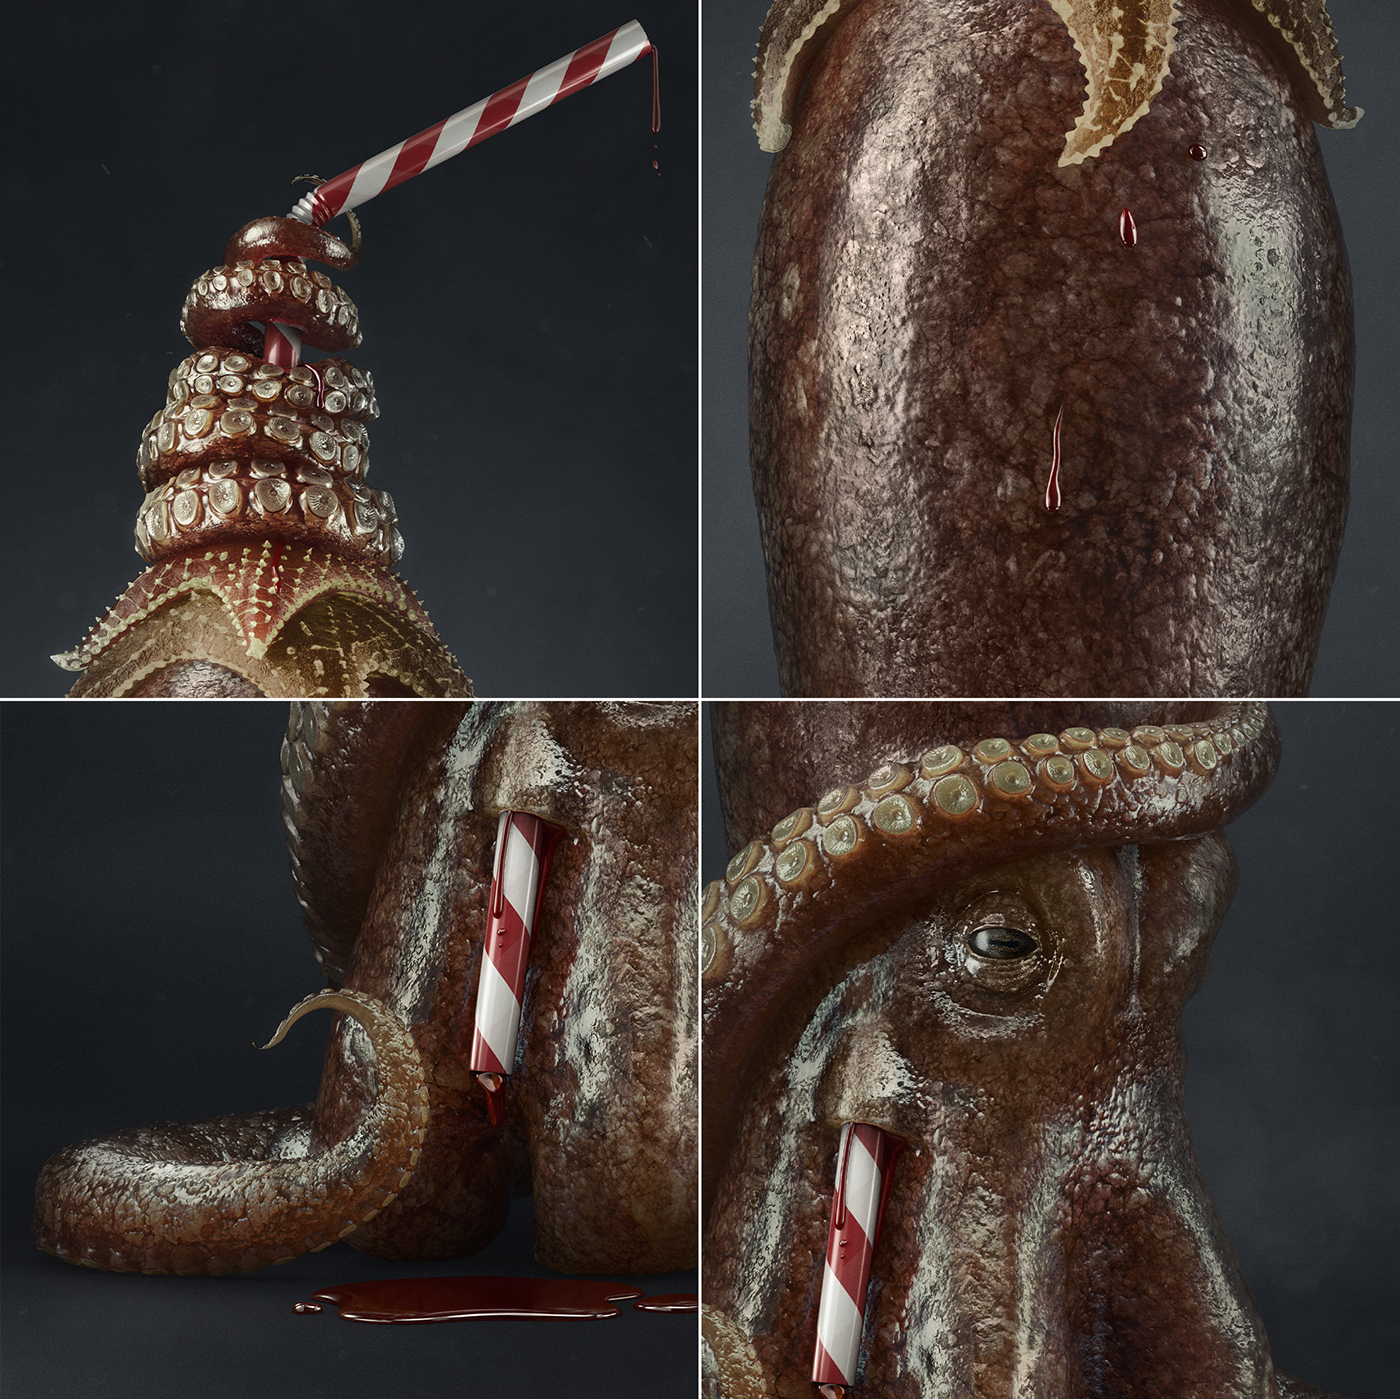 animal fish Squid octopus Ocean plastic straw marine CGI graphic